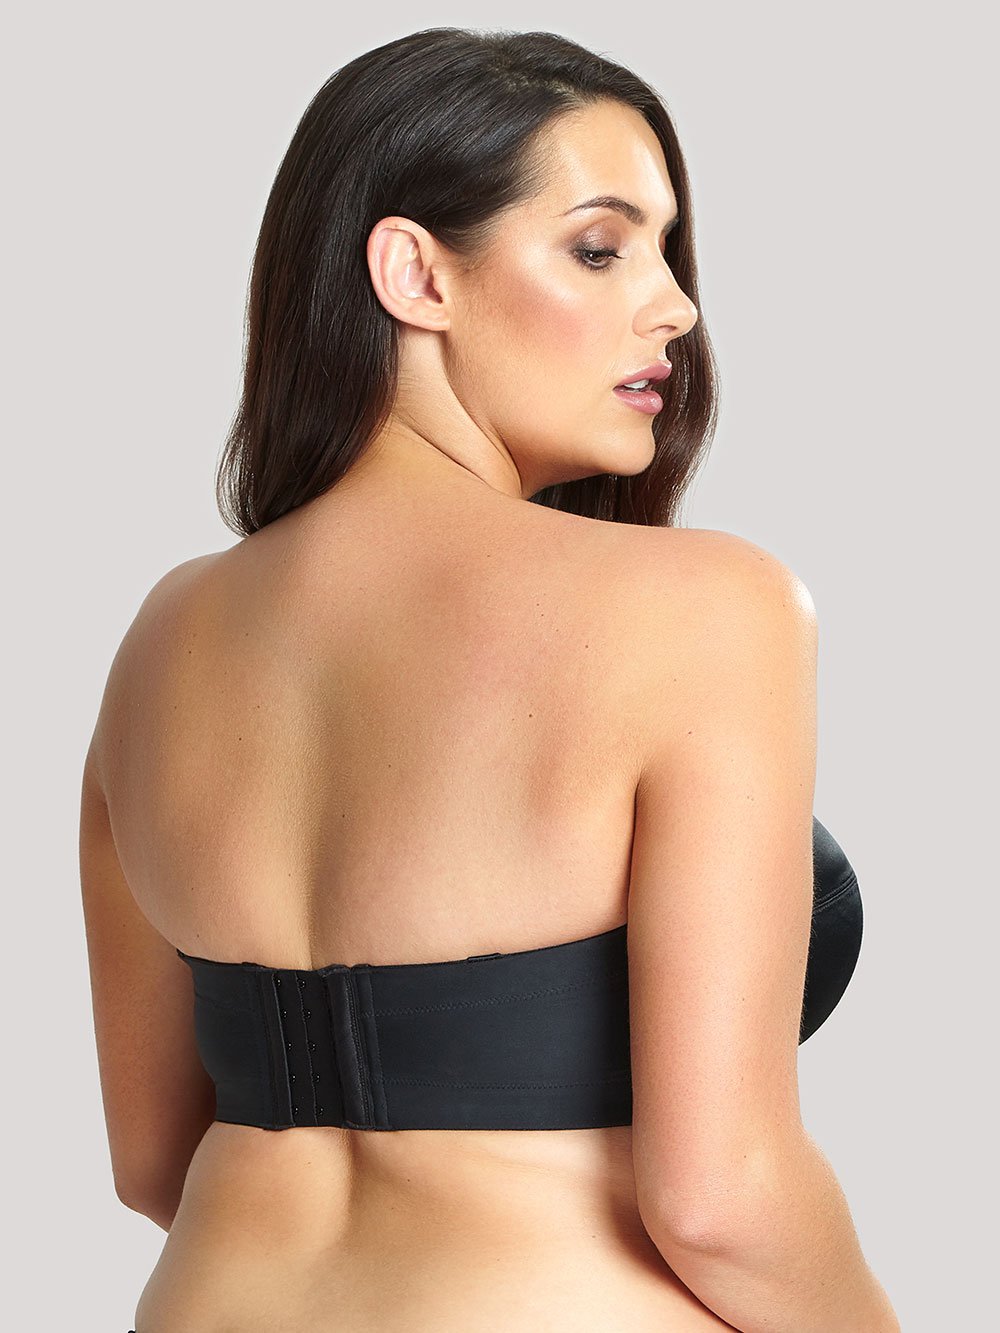 Low Back Bra - Open Back Bra - Strapless Backless Bras for Women